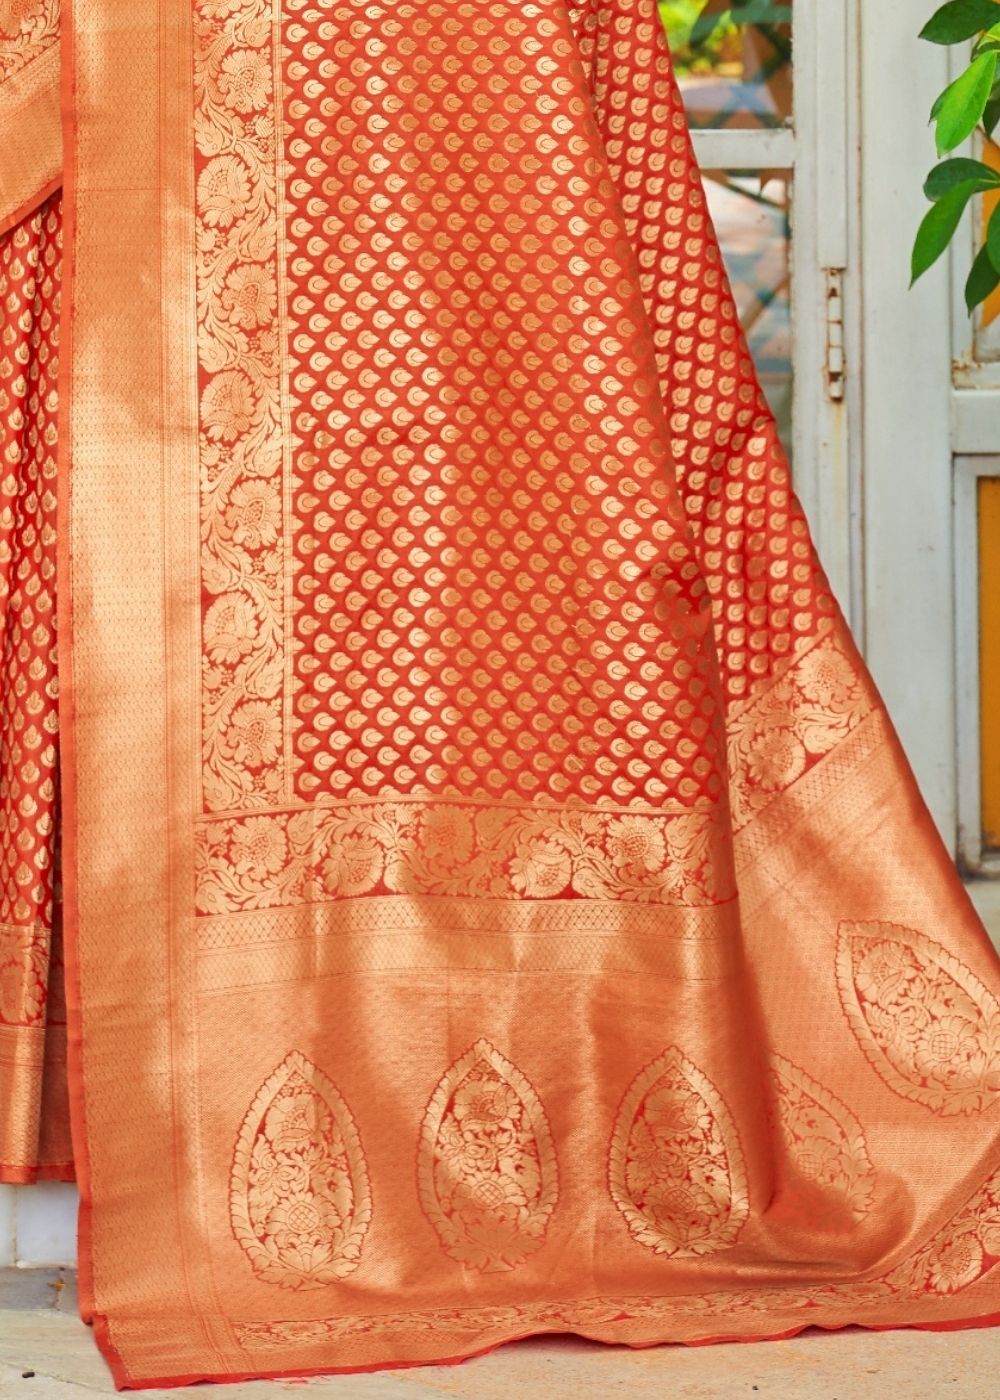 Yam Orange Woven Banarasi Brocade Silk Saree - Colorful Saree